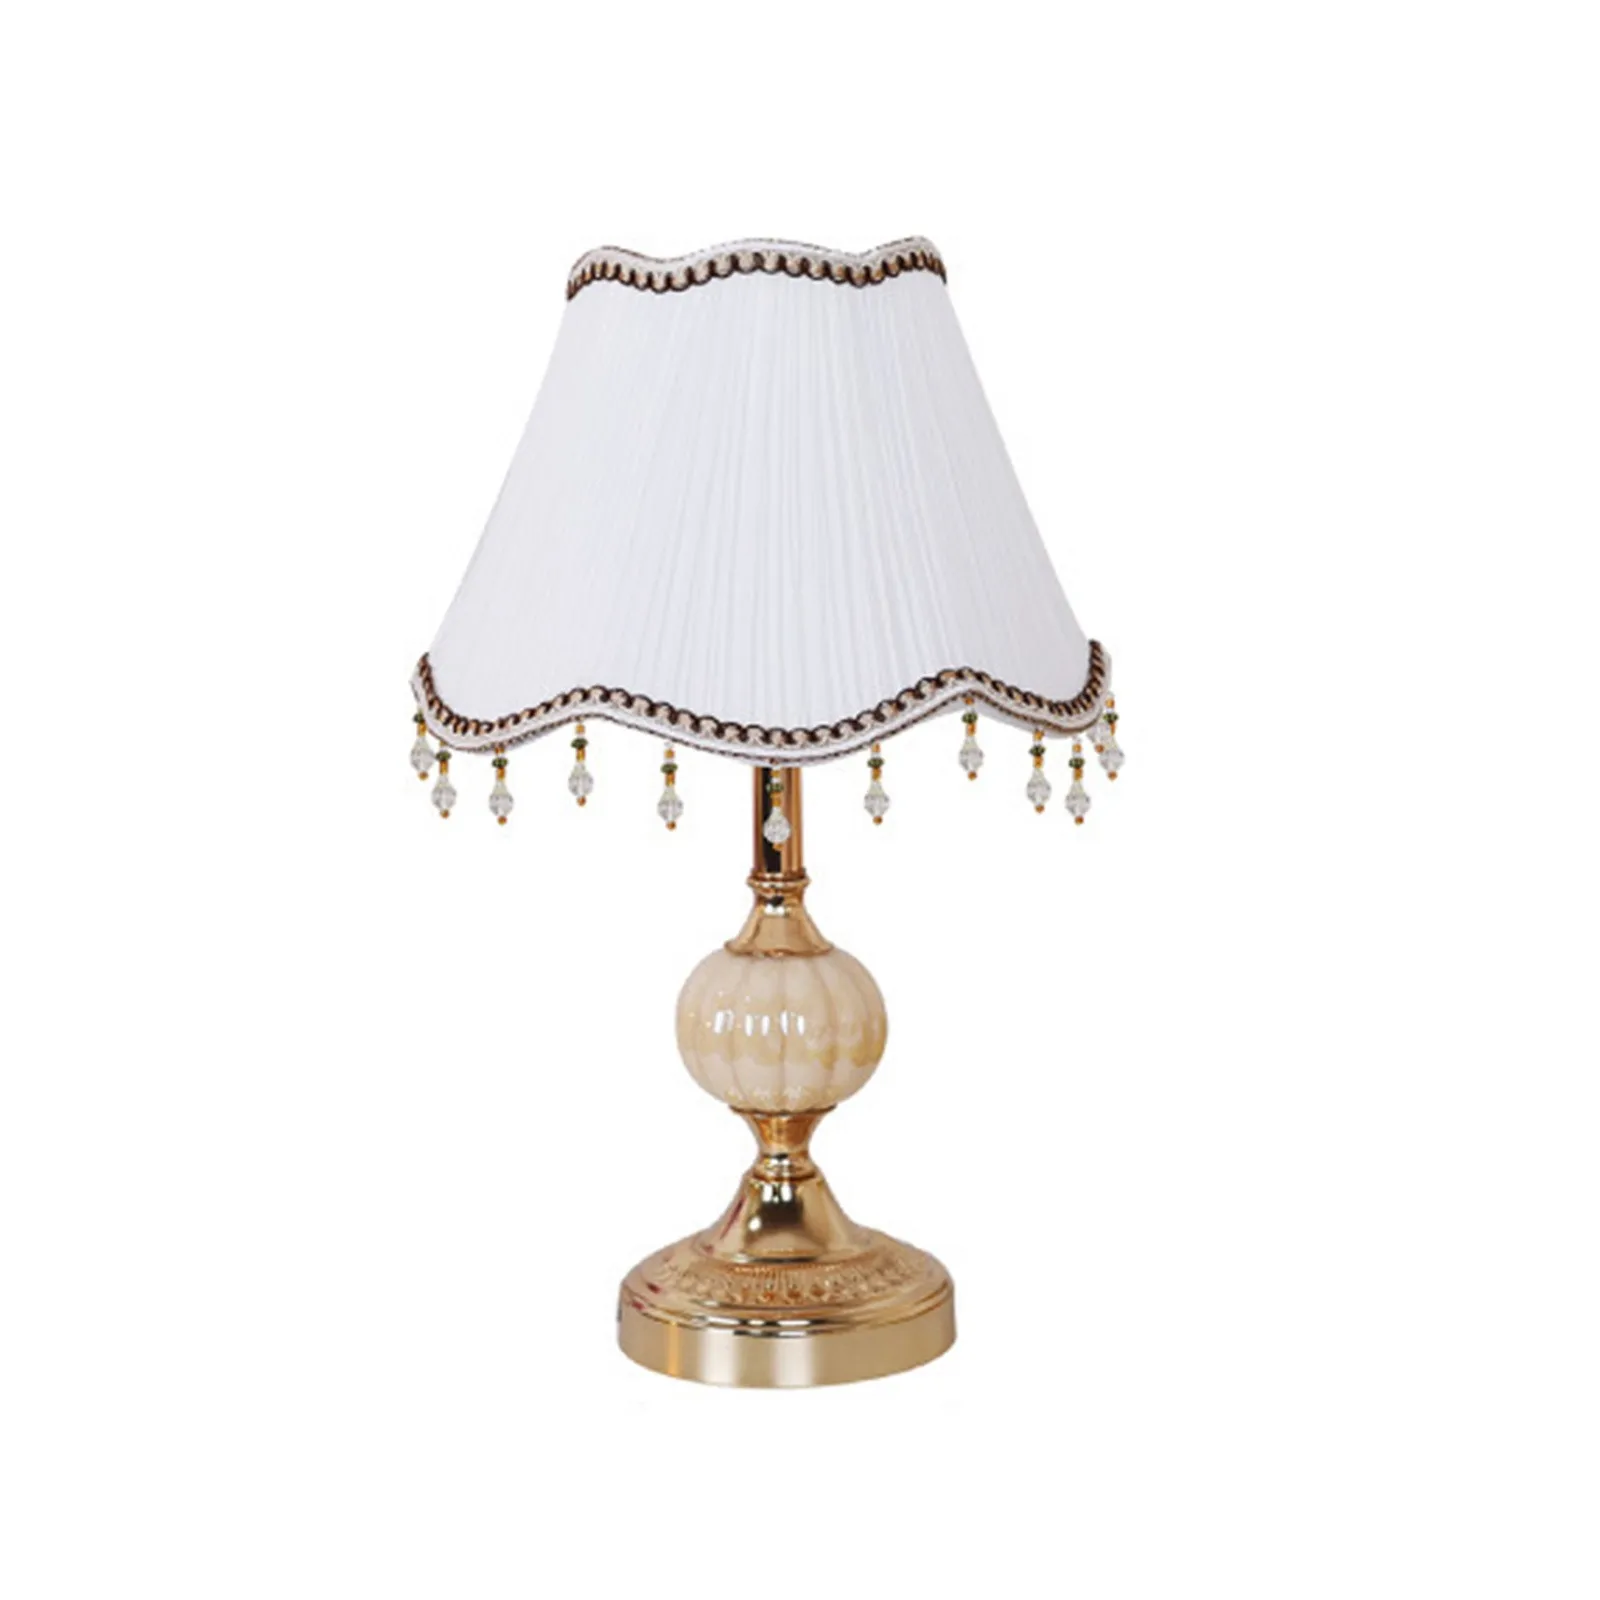 

Тканевая прикроватная лампа, настольная лампа с цилиндрическим абажуром, настольная лампа теплого цвета, домашний декор, еврейский домашний декор, подсвечник